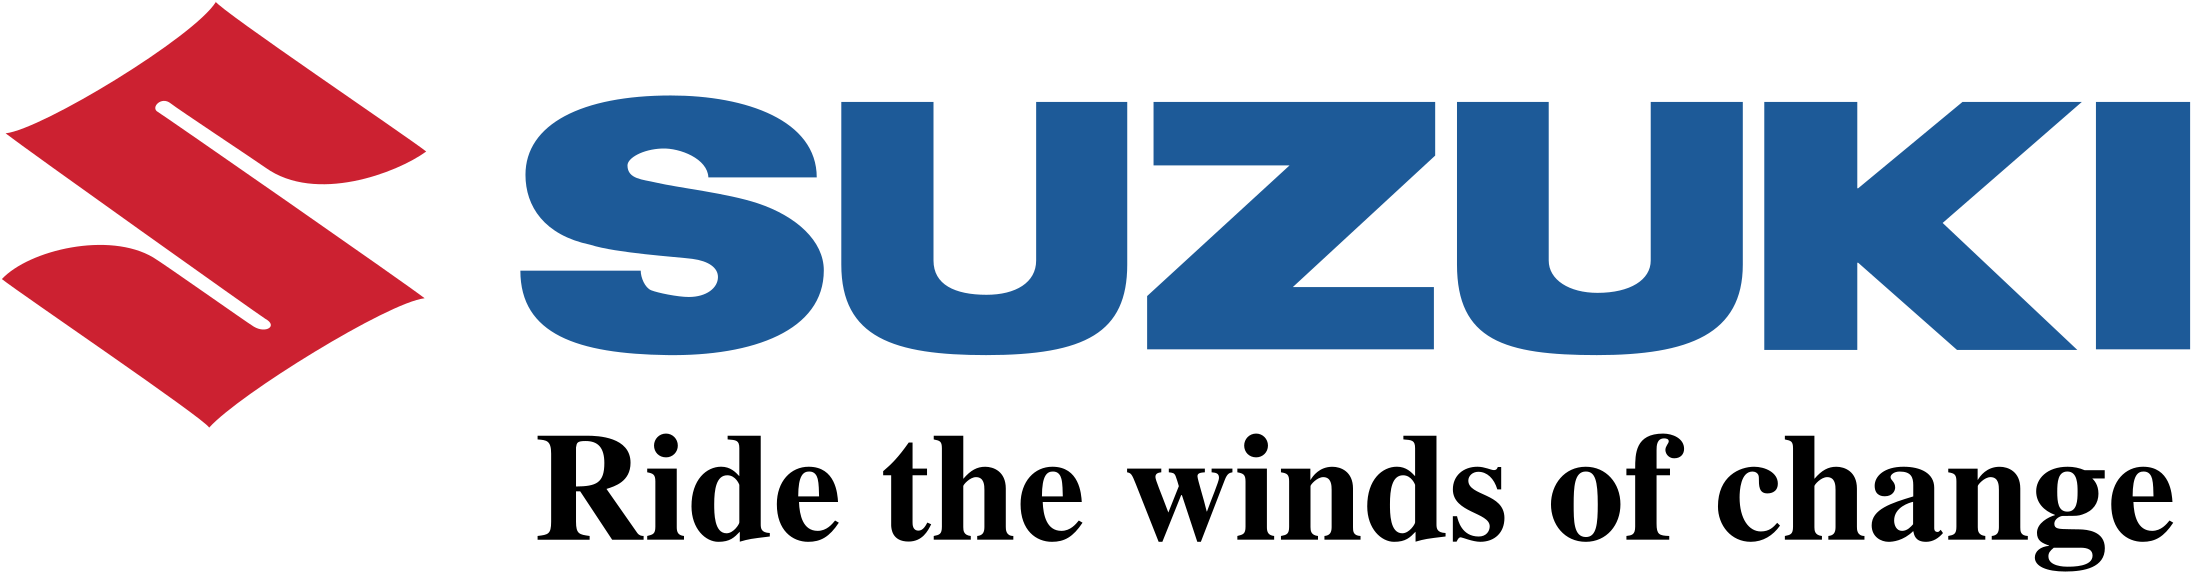 Suzuki Logo Transparent Image